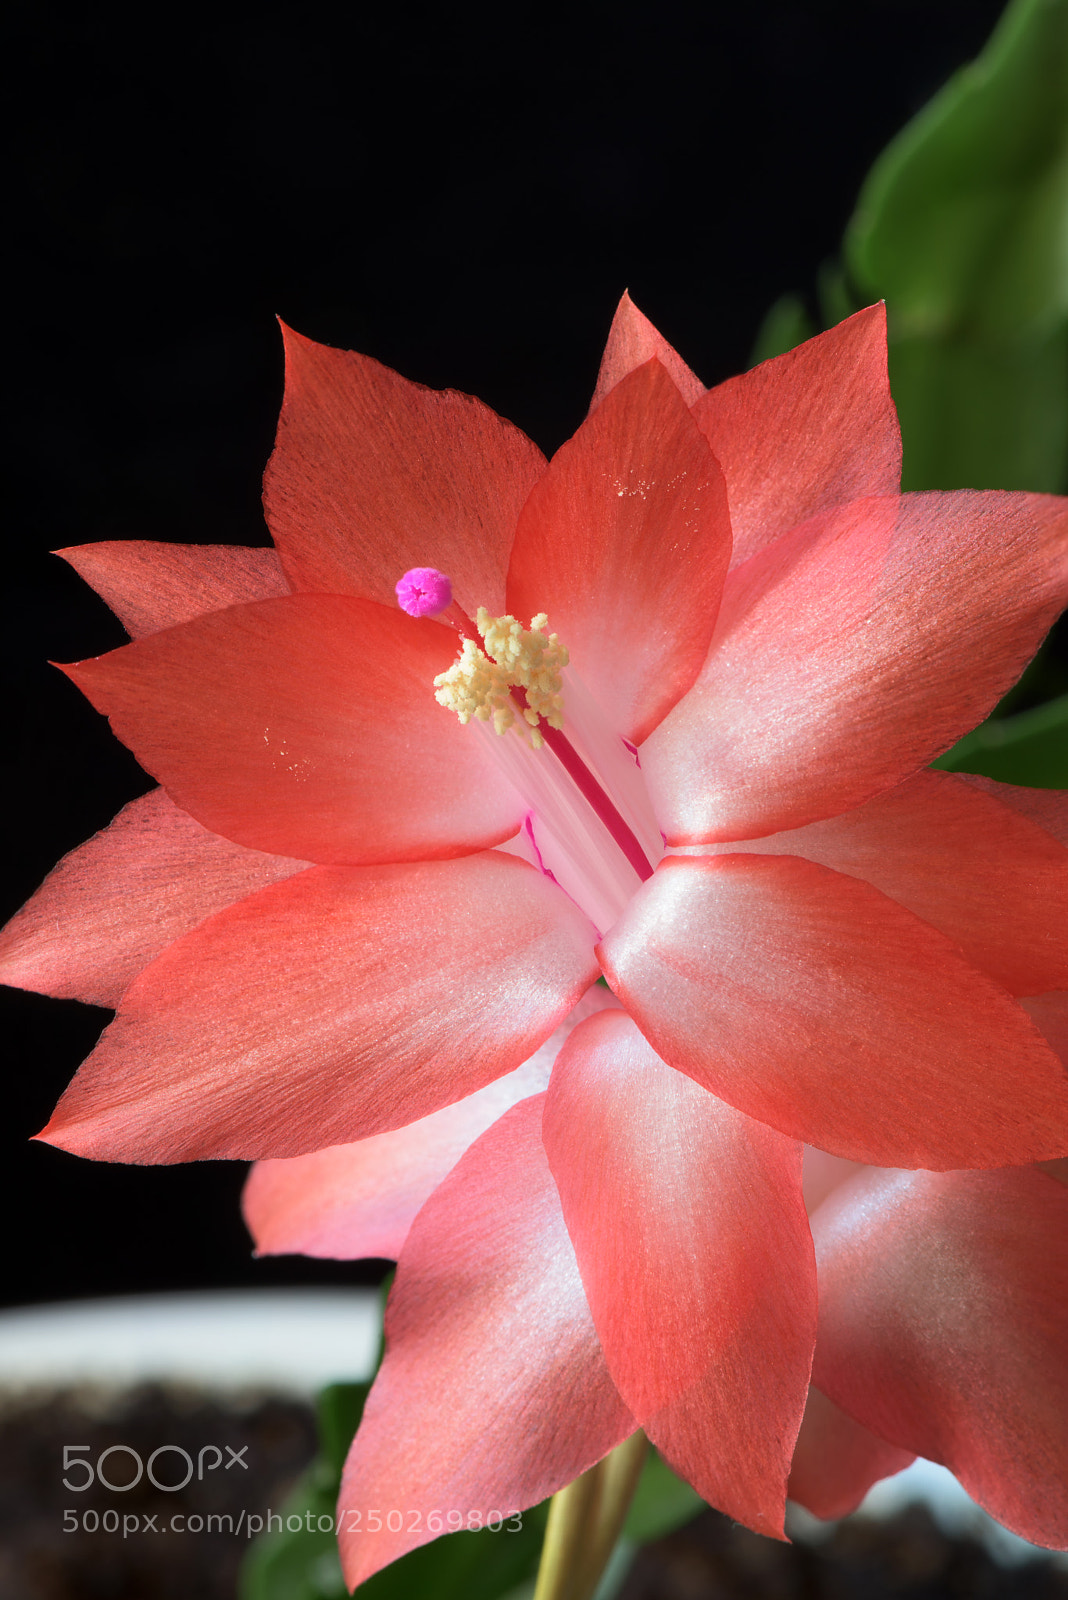 Nikon D810 sample photo. Beautiful cactus flower photography